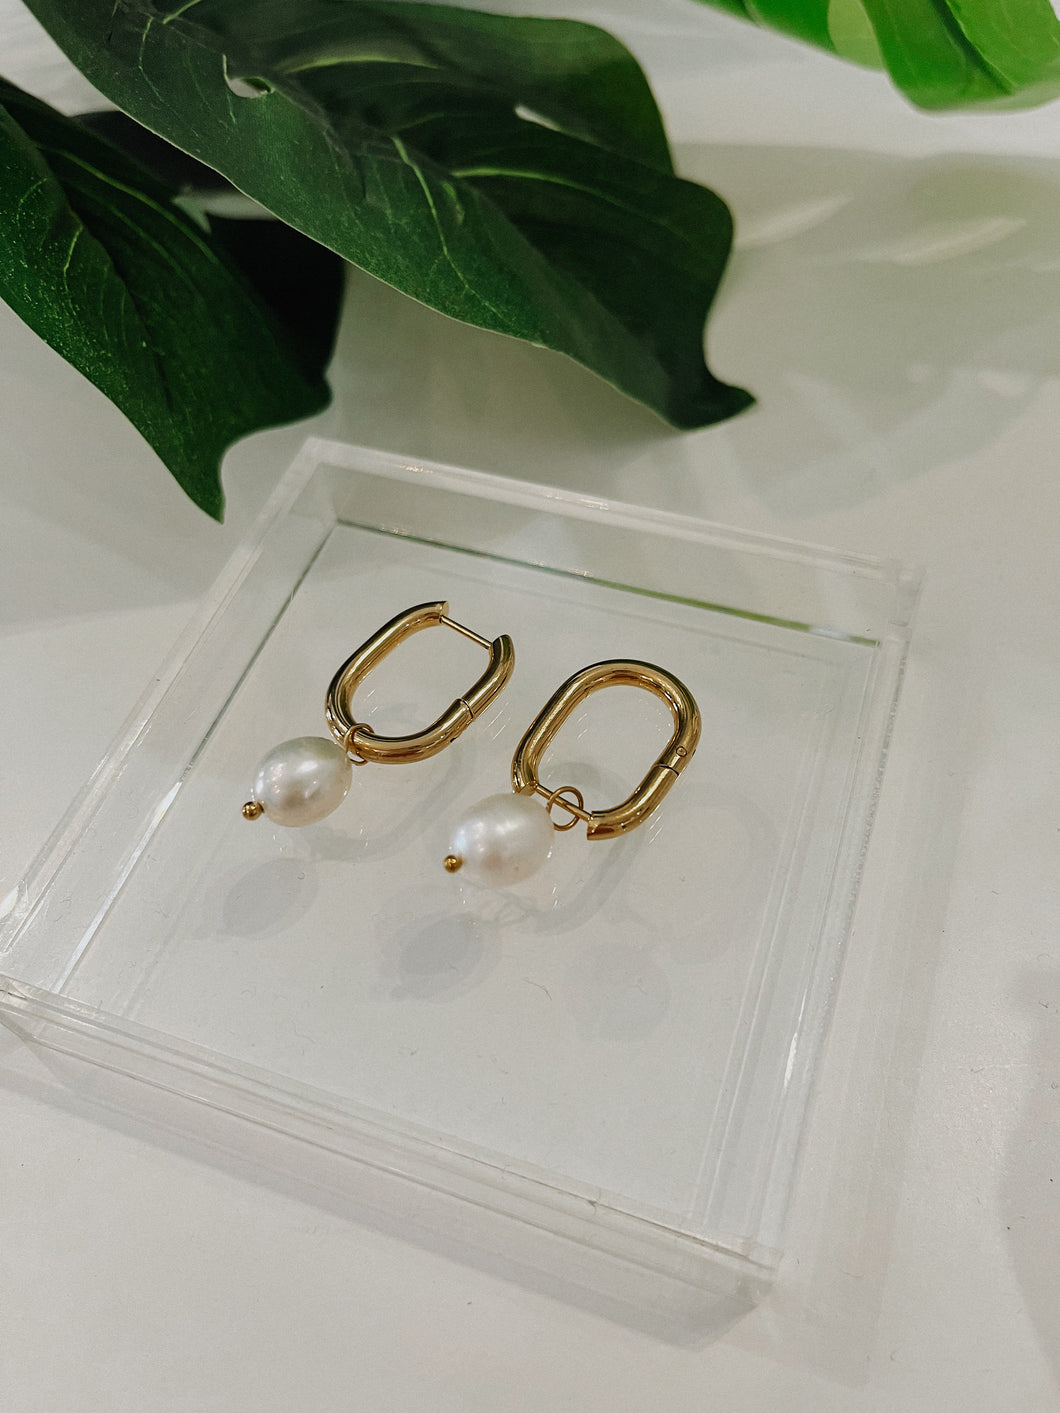 The “Harper” pearl drop earrings